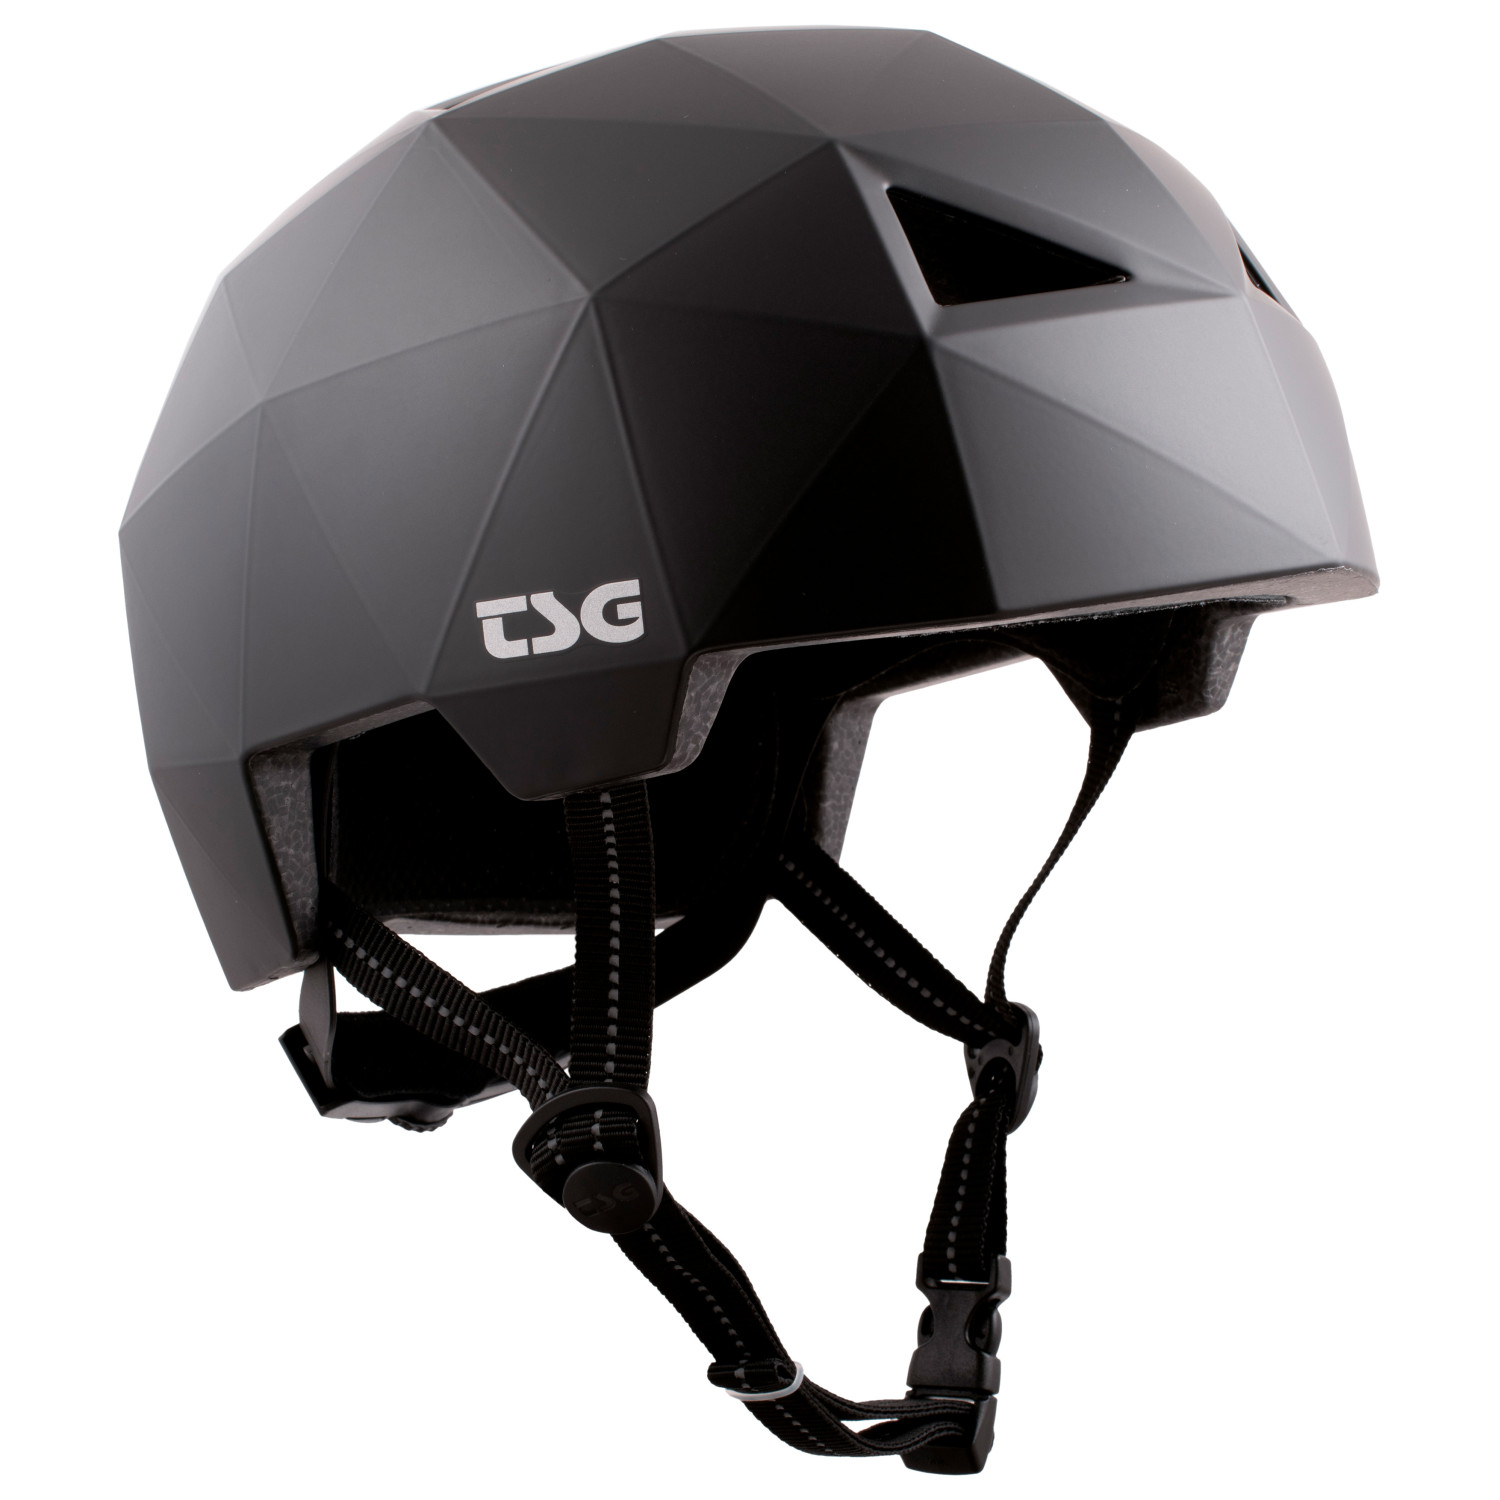 Велосипедный шлем Tsg Geo Solid Color, цвет Satin Black